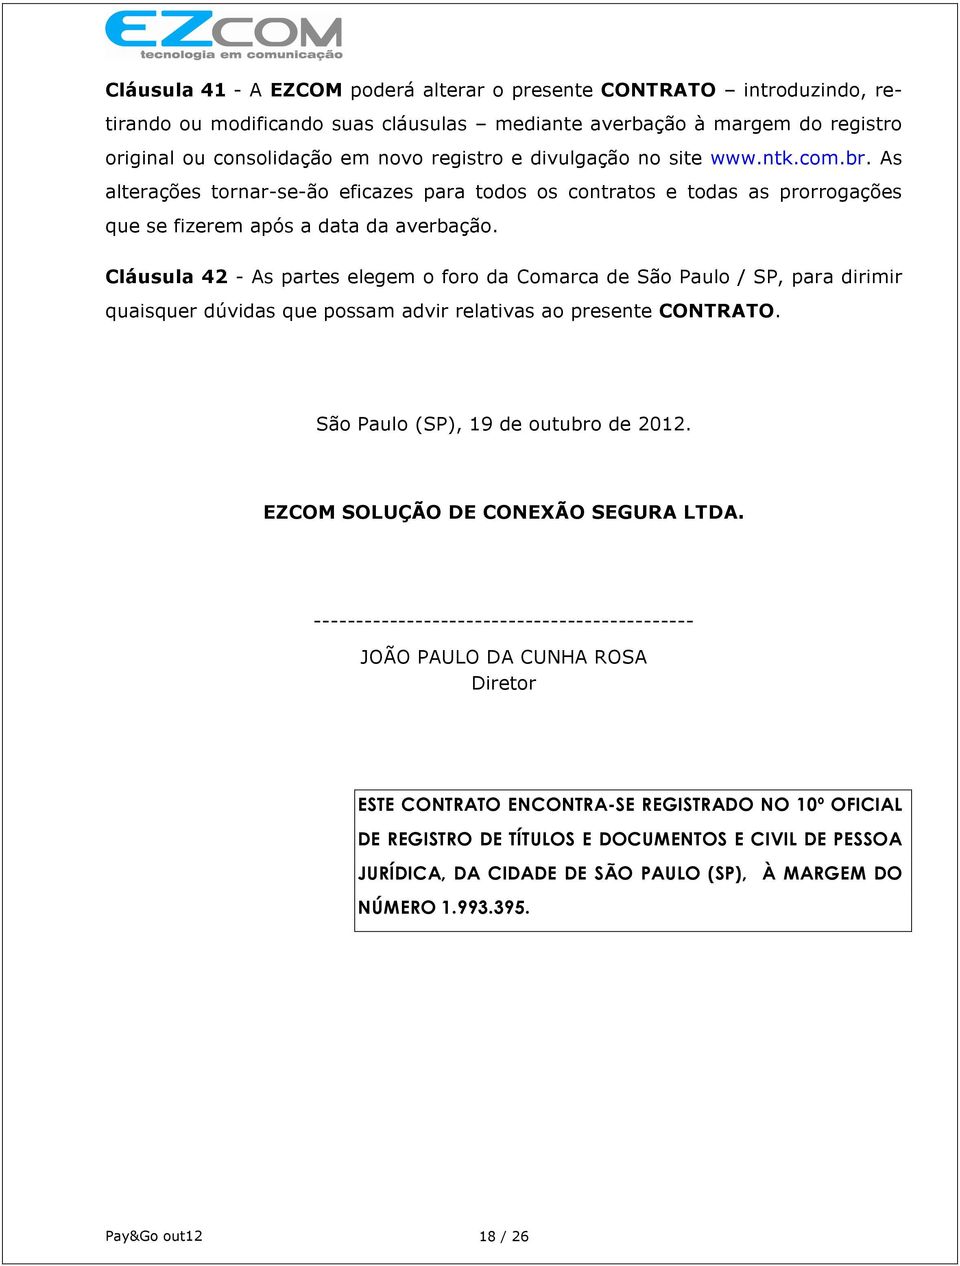 Cláusula 42 - As partes elegem o foro da Comarca de São Paulo / SP, para dirimir quaisquer dúvidas que possam advir relativas ao presente CONTRATO. São Paulo (SP), 19 de outubro de 2012.